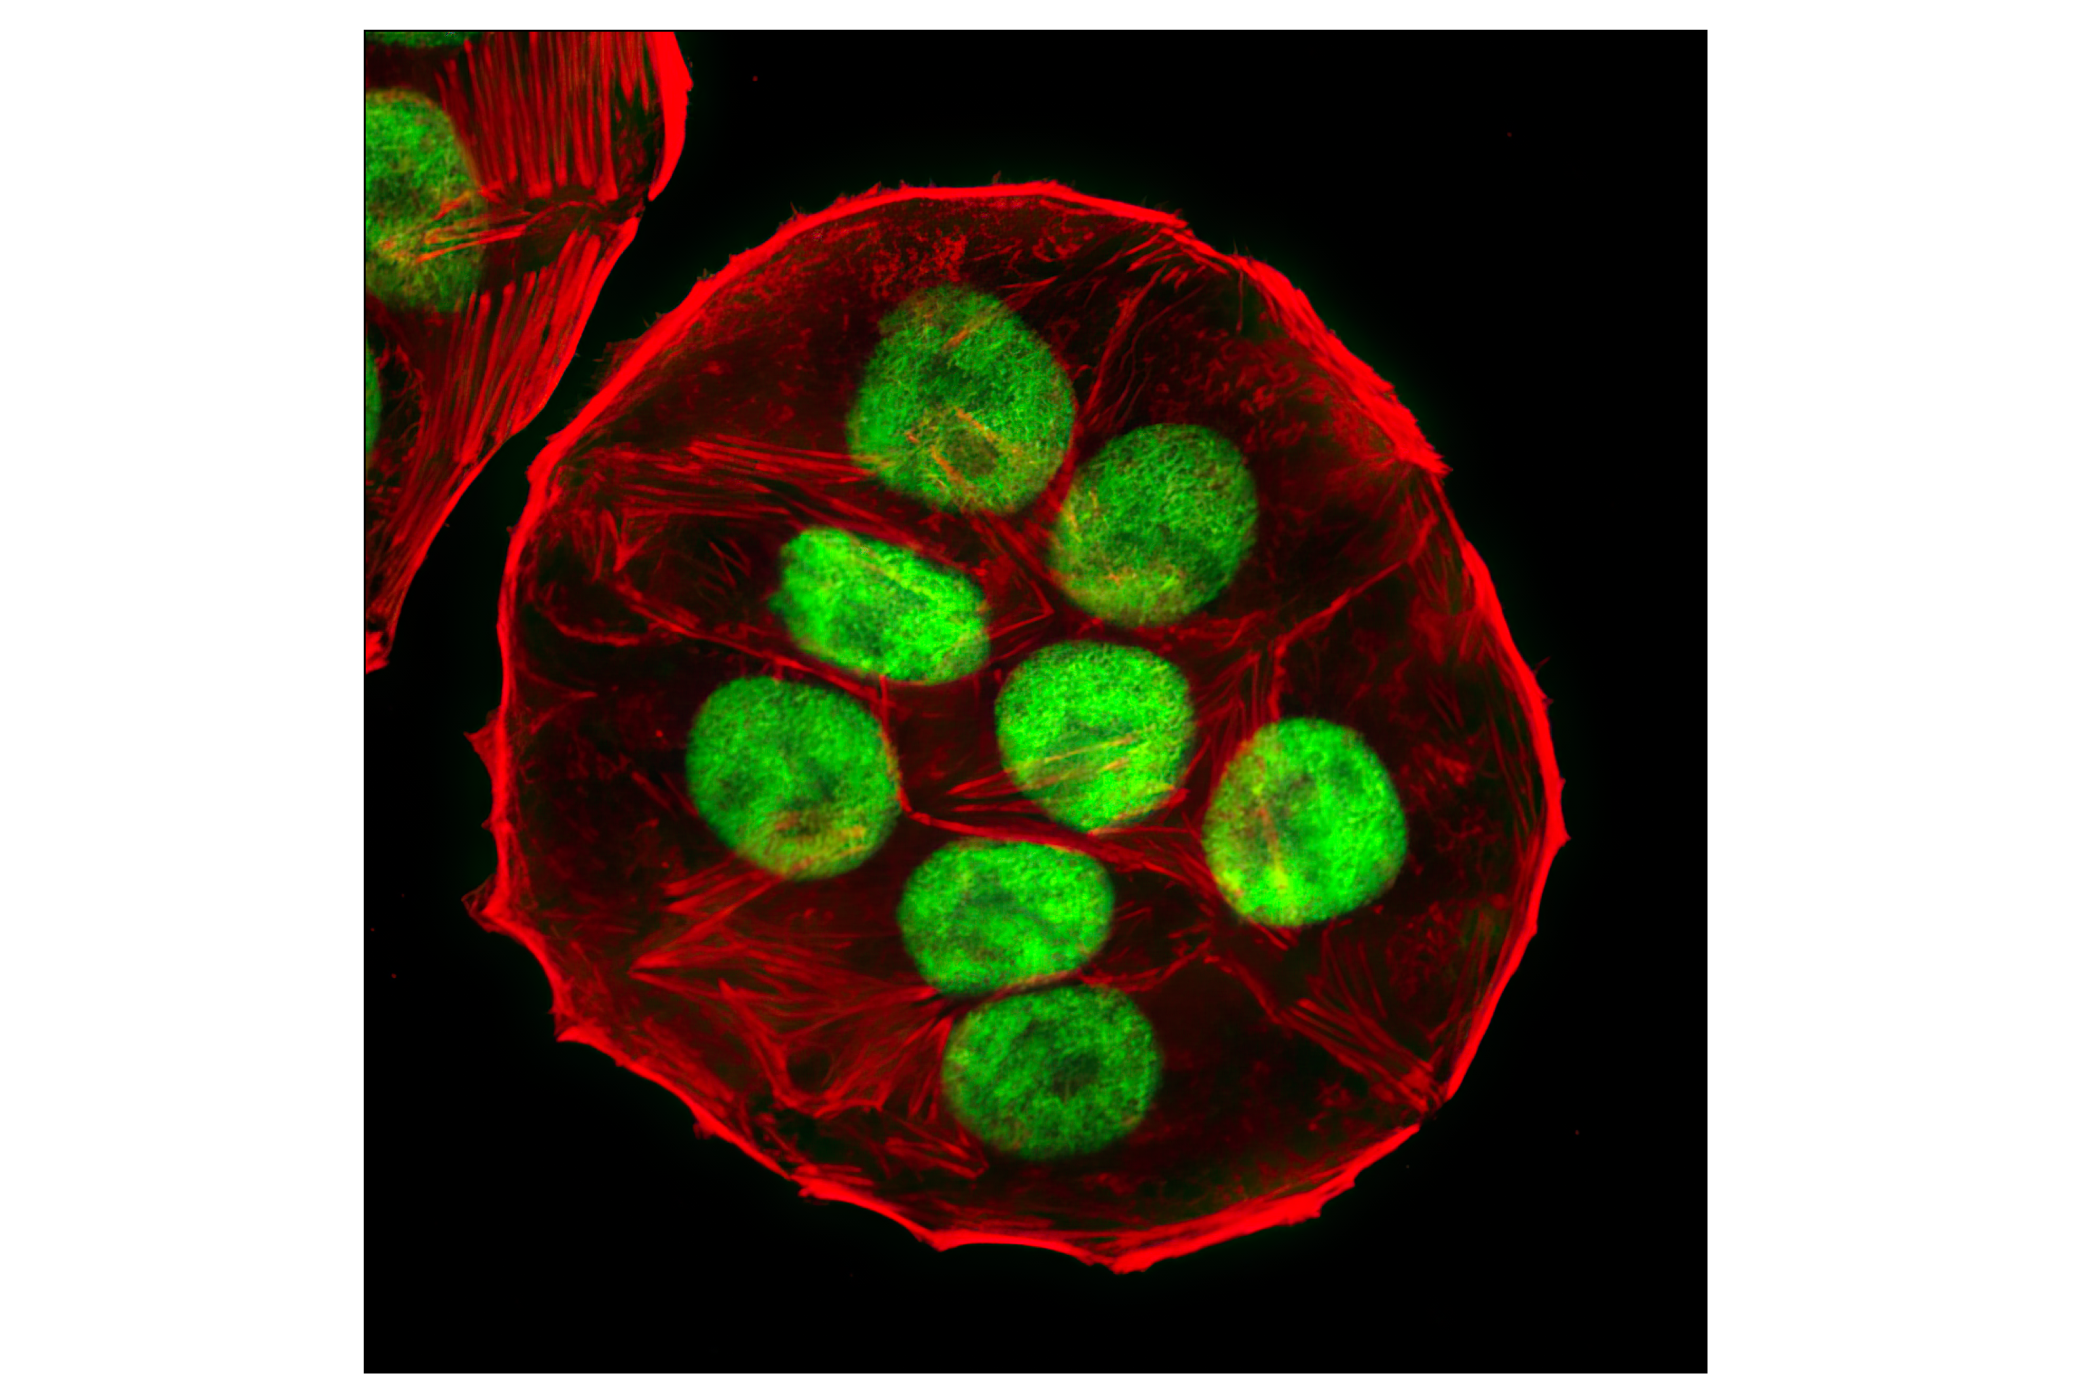  Image 25: p53 Antibody Sampler Kit